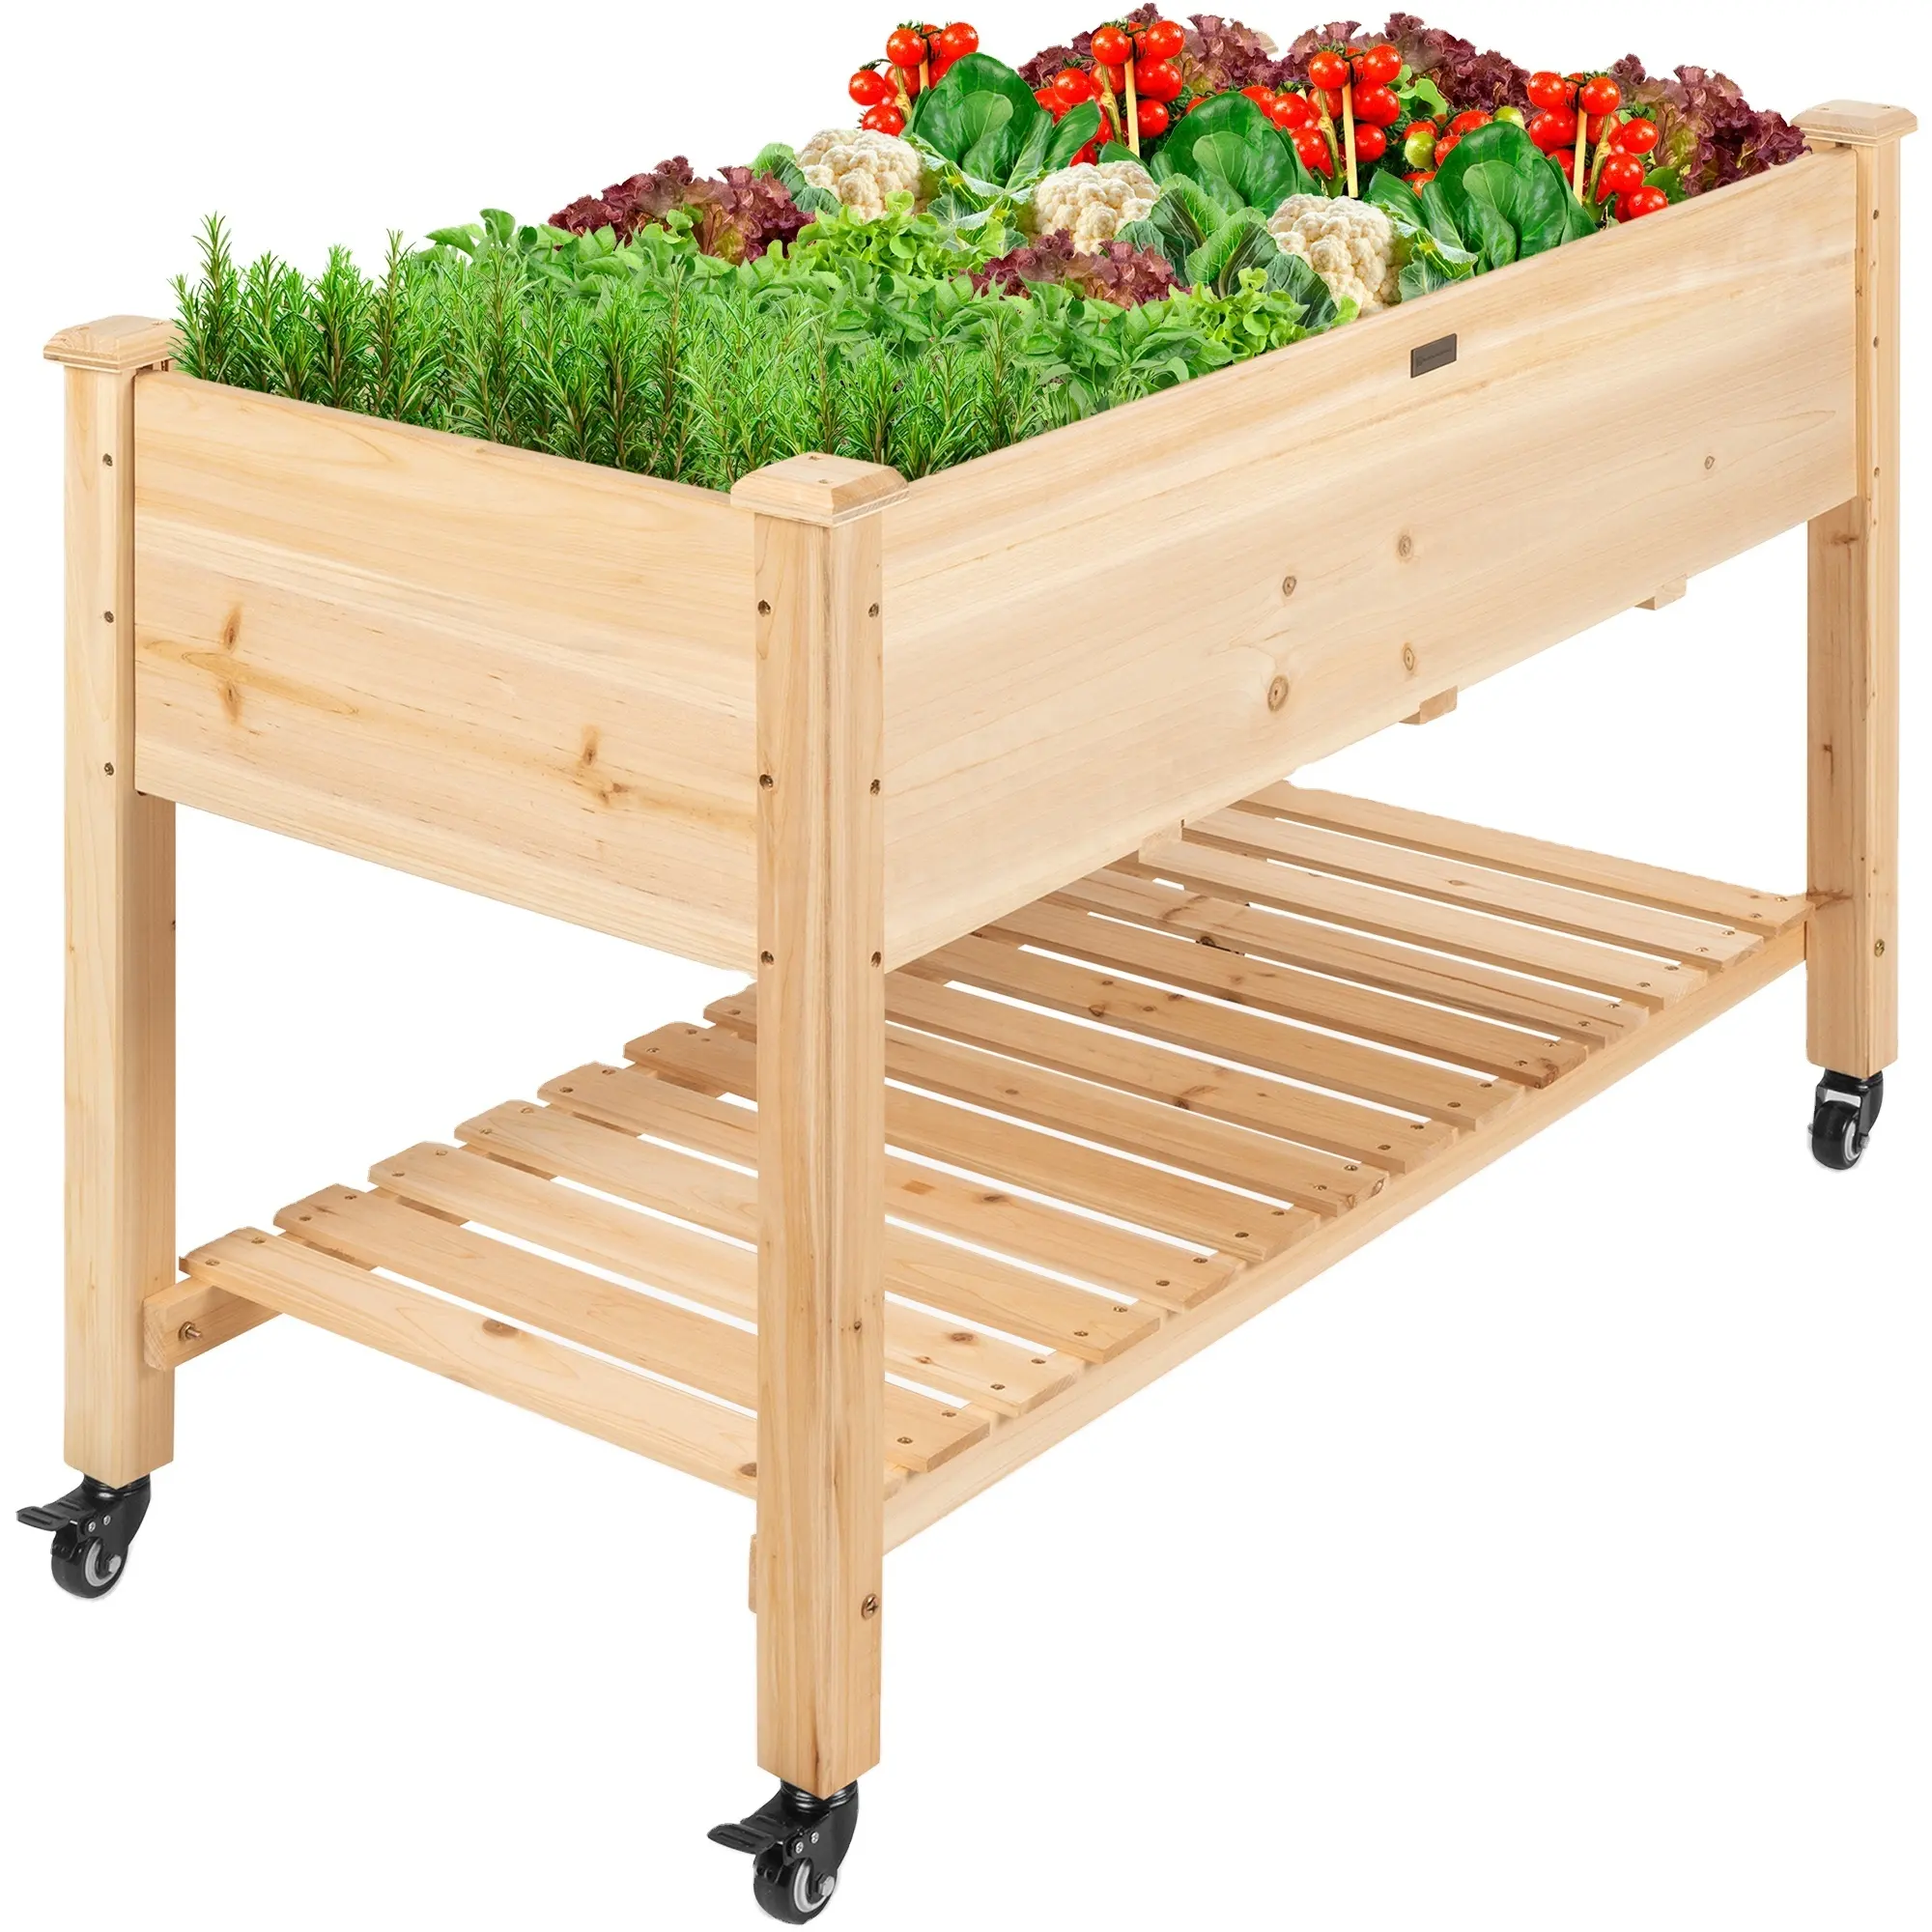 กล่องปลูกผักทรงสูงพร้อมตะแกรงปลูก,ชั้นเก็บของขนาดใหญ่เตียงไม้ยกสวนสำหรับสมุนไพร